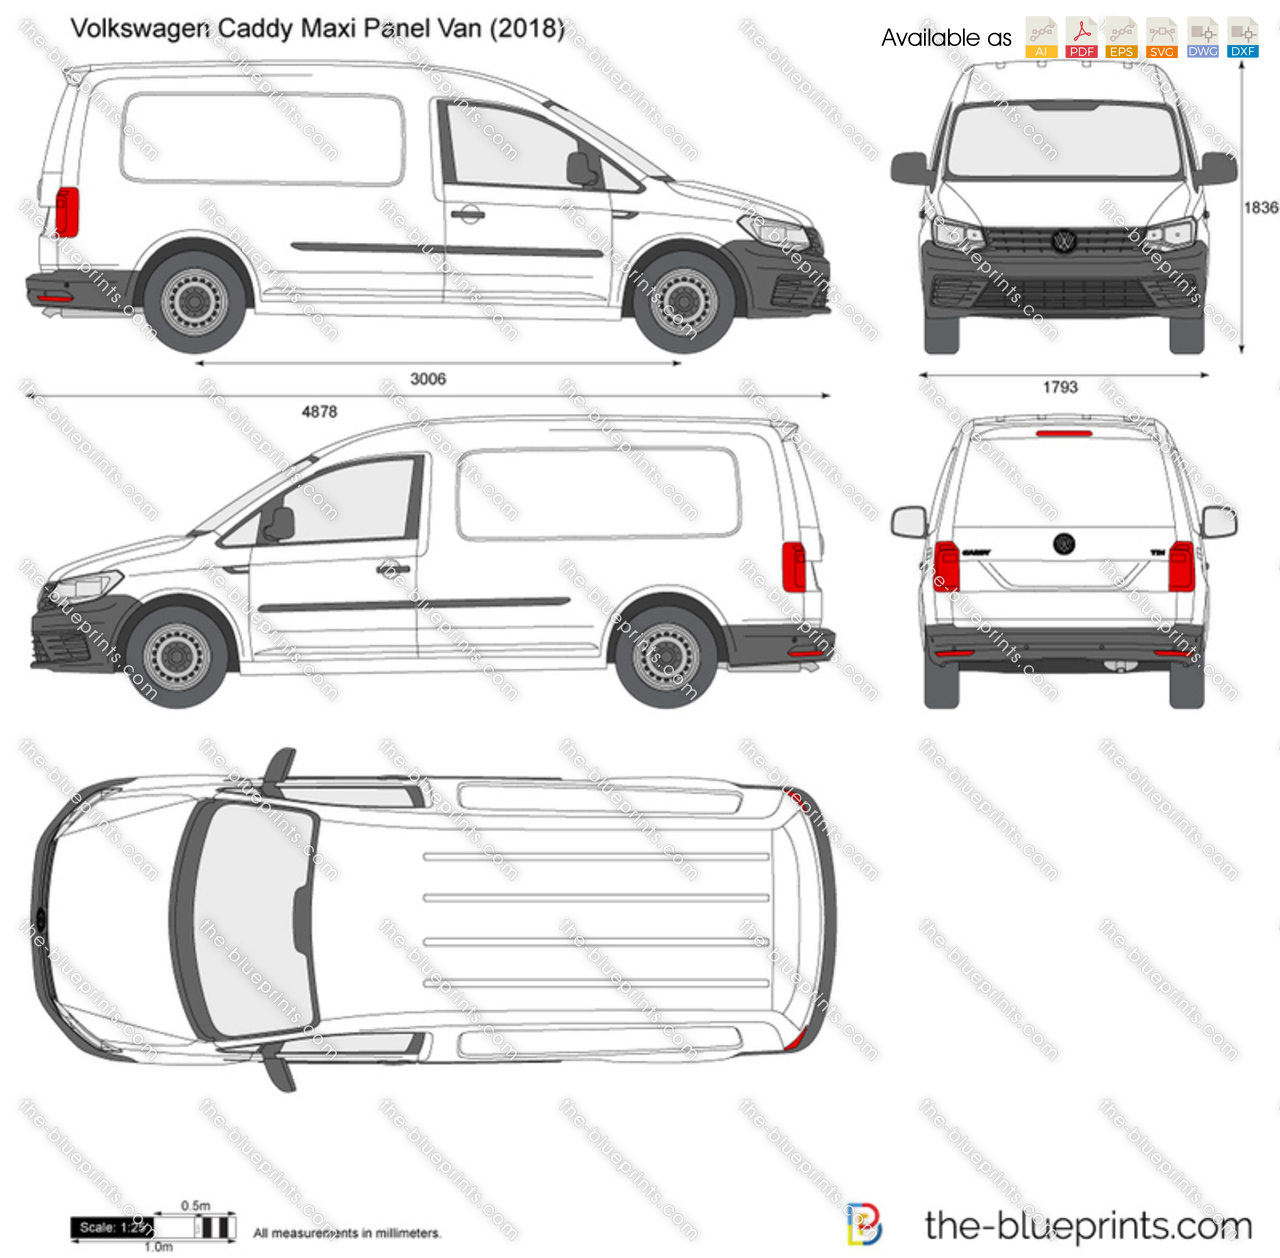 Volkswagen Caddy Maxi Panel Van